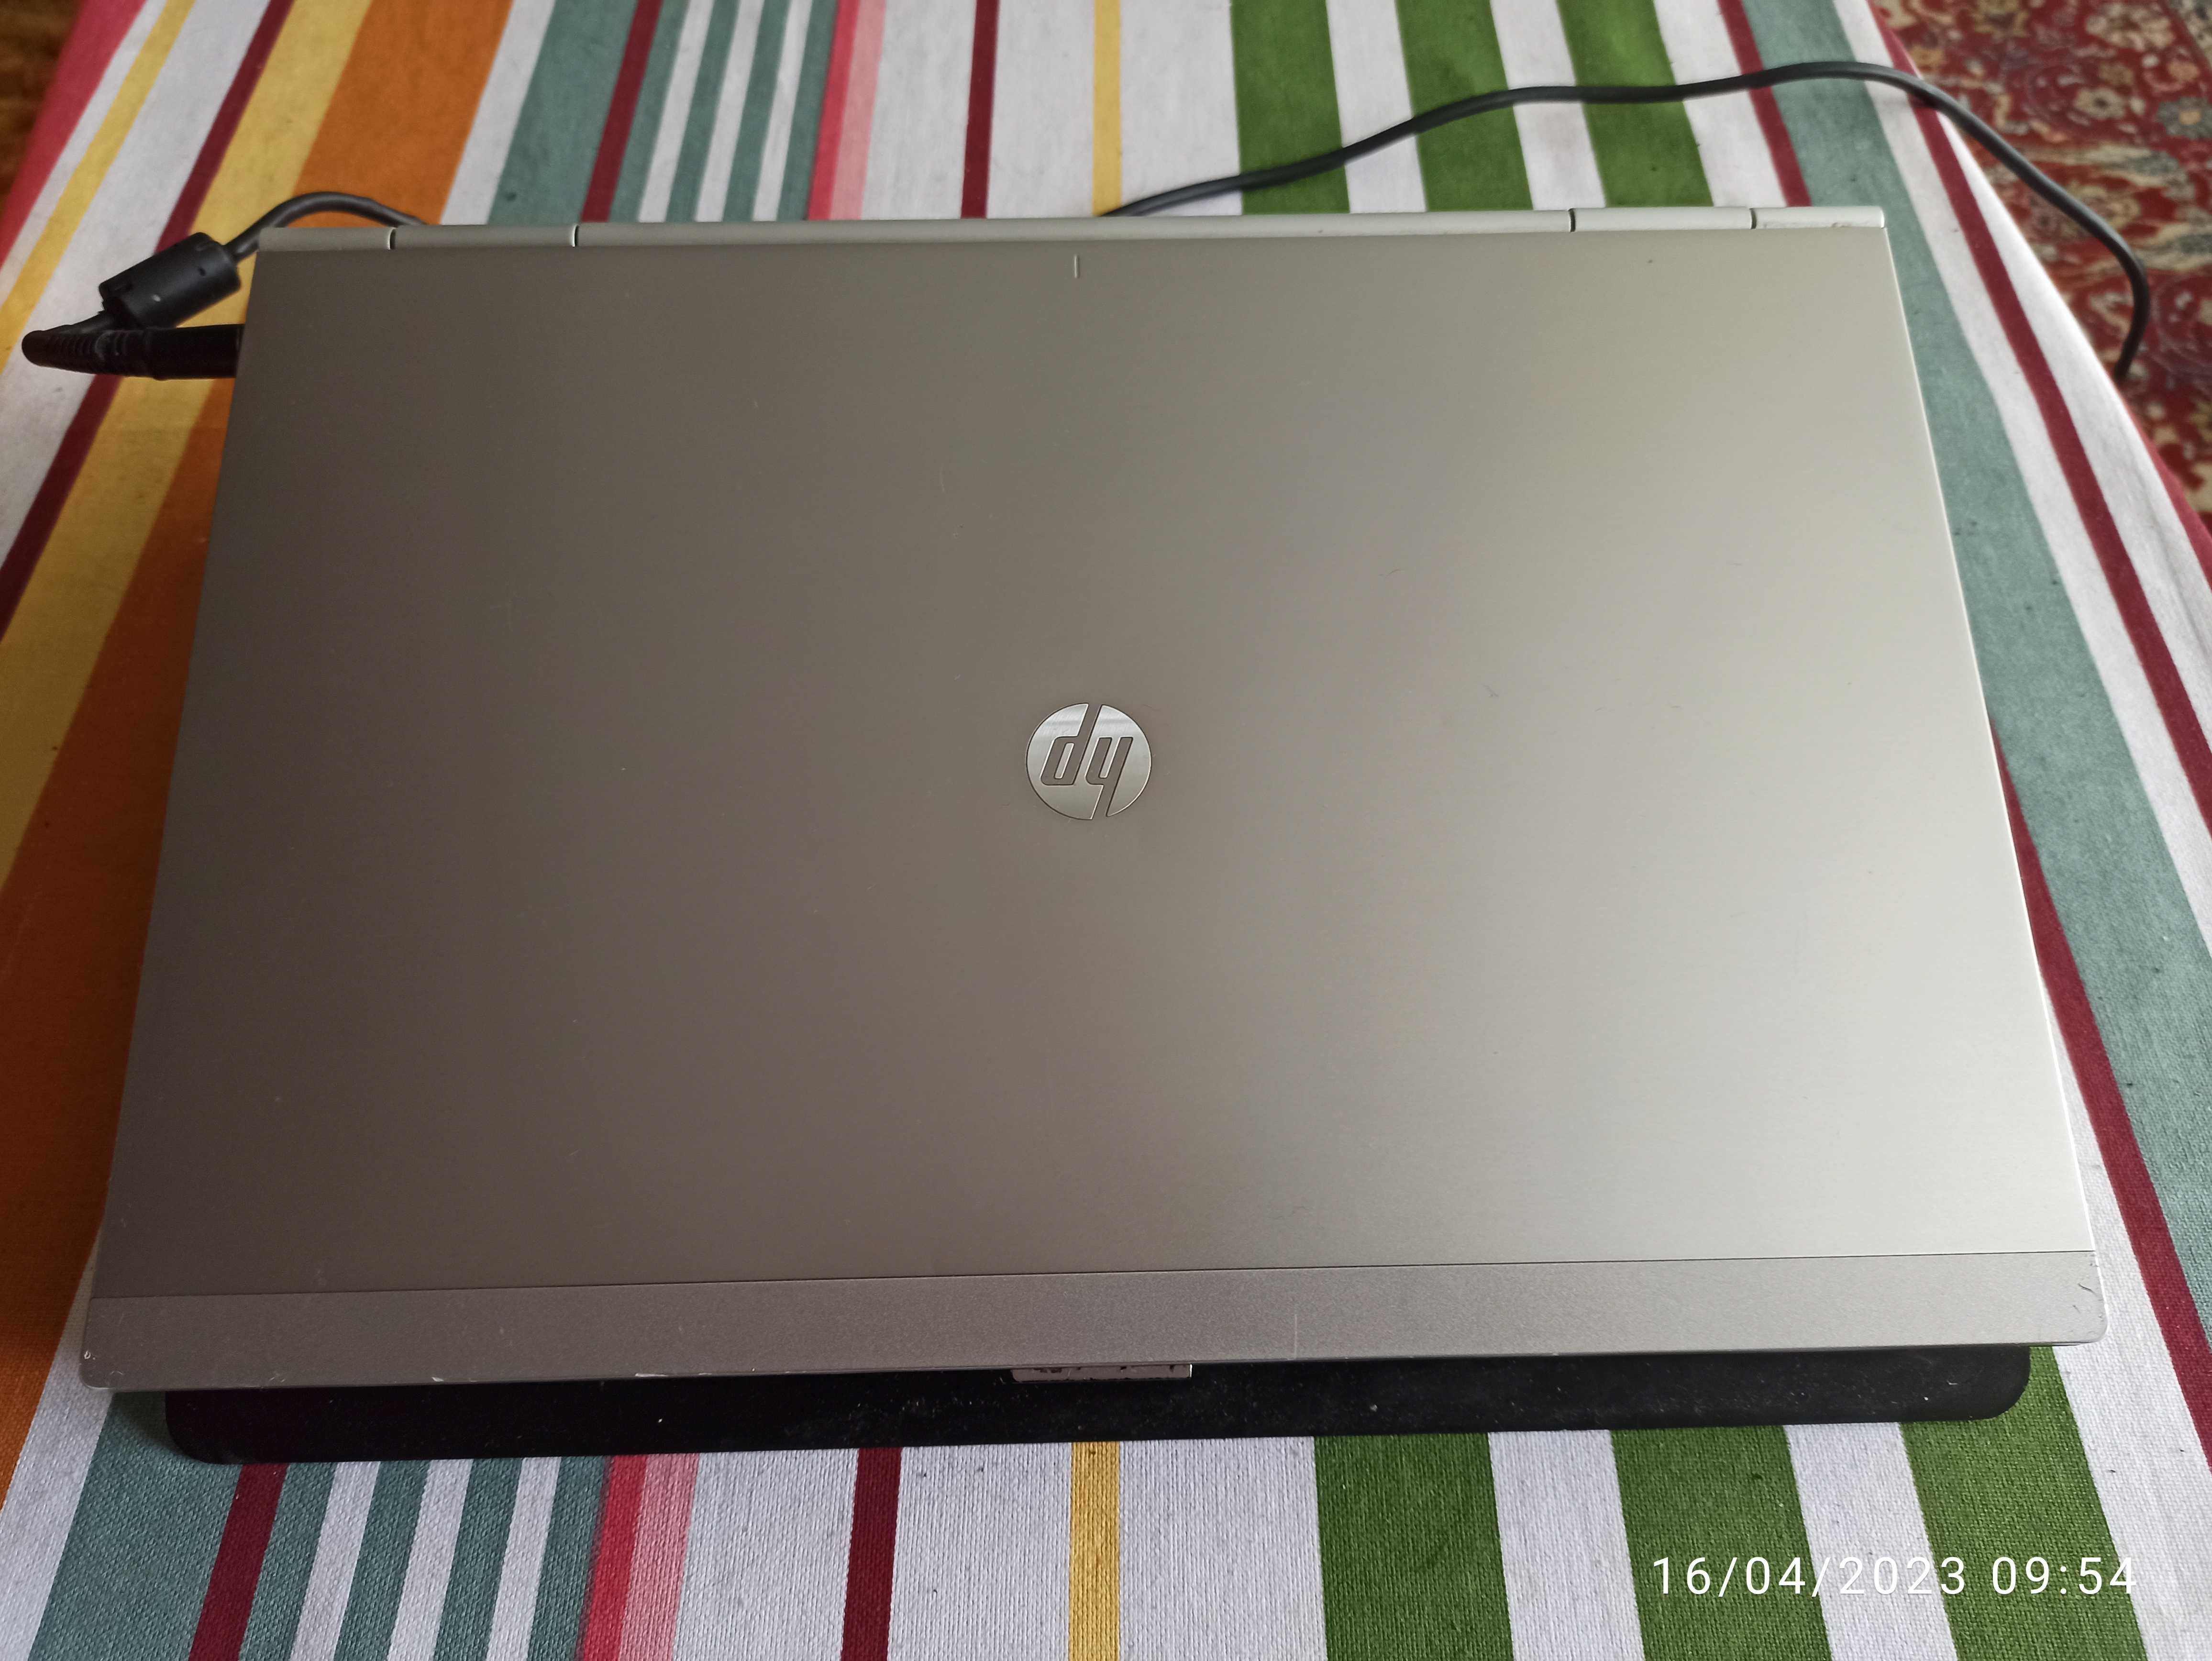 Лаптоп HP 8460P Elitebook